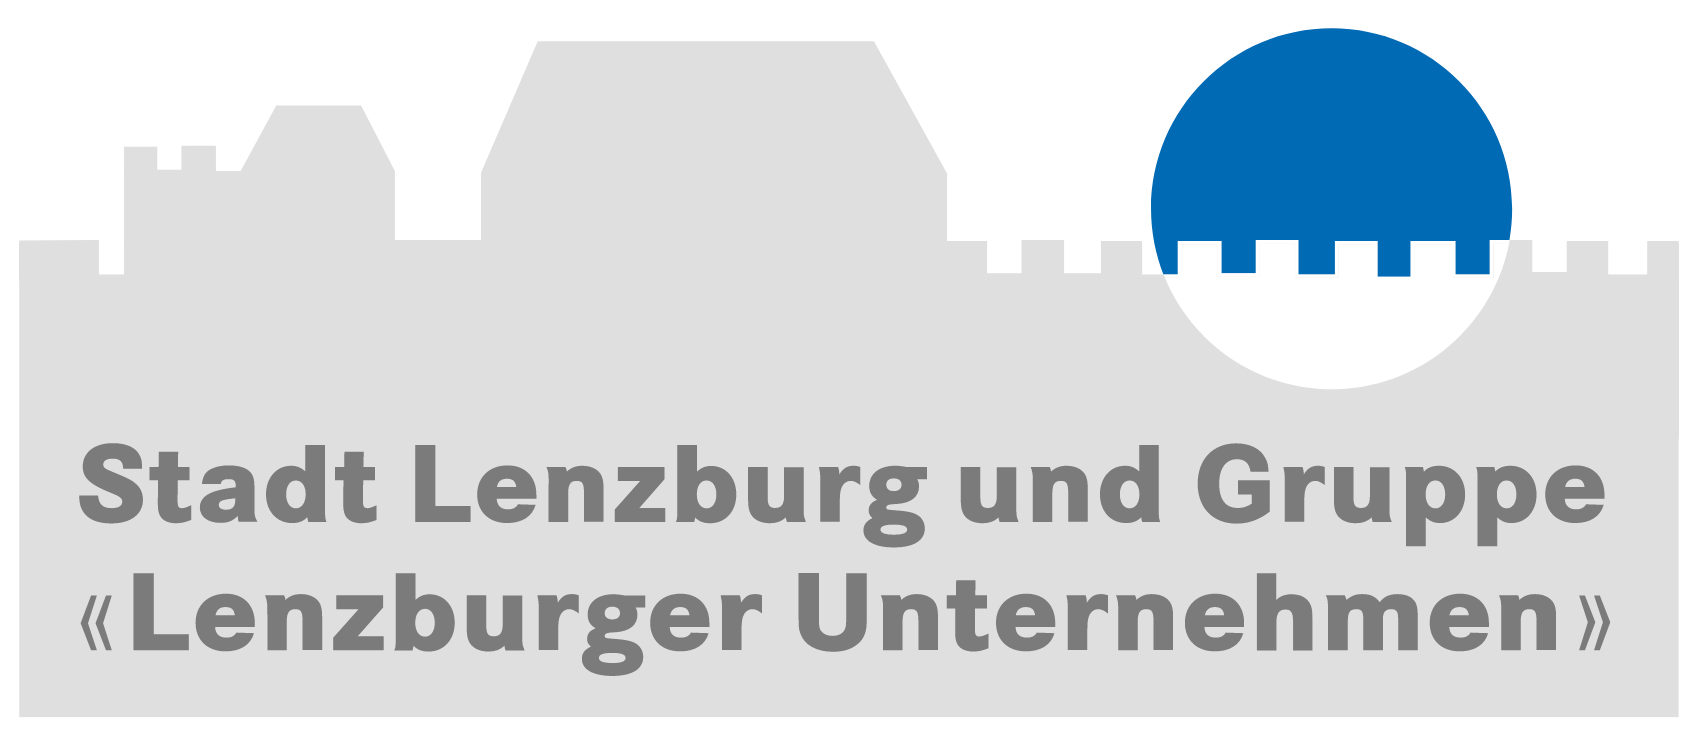 Stadt Lenzburg und Gruppe "Lenzburger Unternehmen"